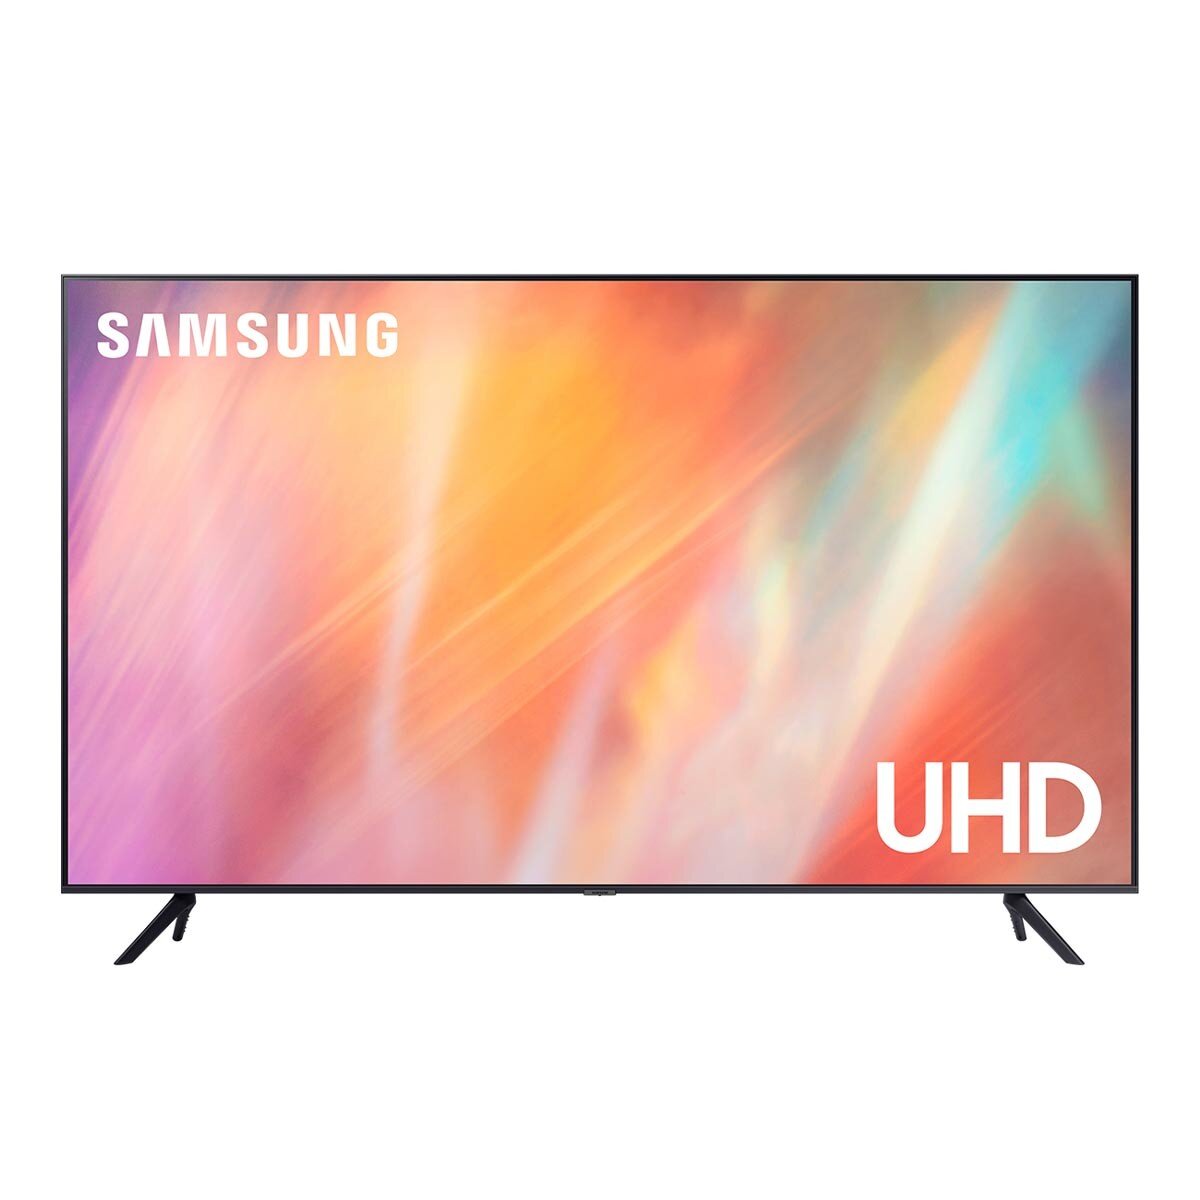 Samsung 65吋 4K UHD 電視 UA65AU7700WXZW + 3.1.2 聲道 Soundbar 含重低音 HW-Q600A